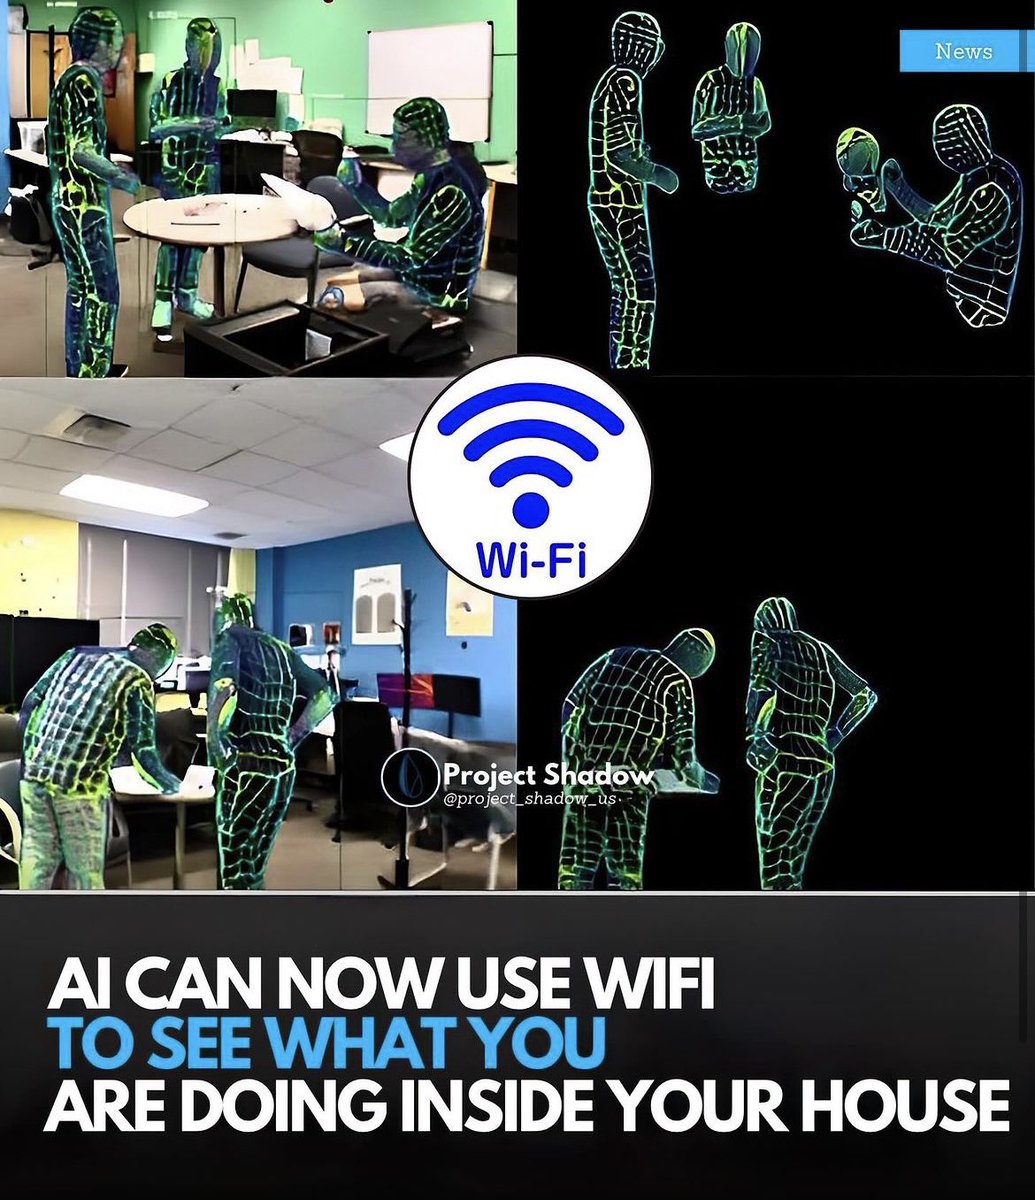 El wifi de tu casa sirve para mucho más que darte internet. Como afirmo en mi nuevo libro, nuevas tecnologías permiten mapear y detectar cuerpos y movimientos dentro de la señal de wifi del hogar. Pueden ver cuando vas al baño, te duchas, momentos íntimos, a tus hijos. El